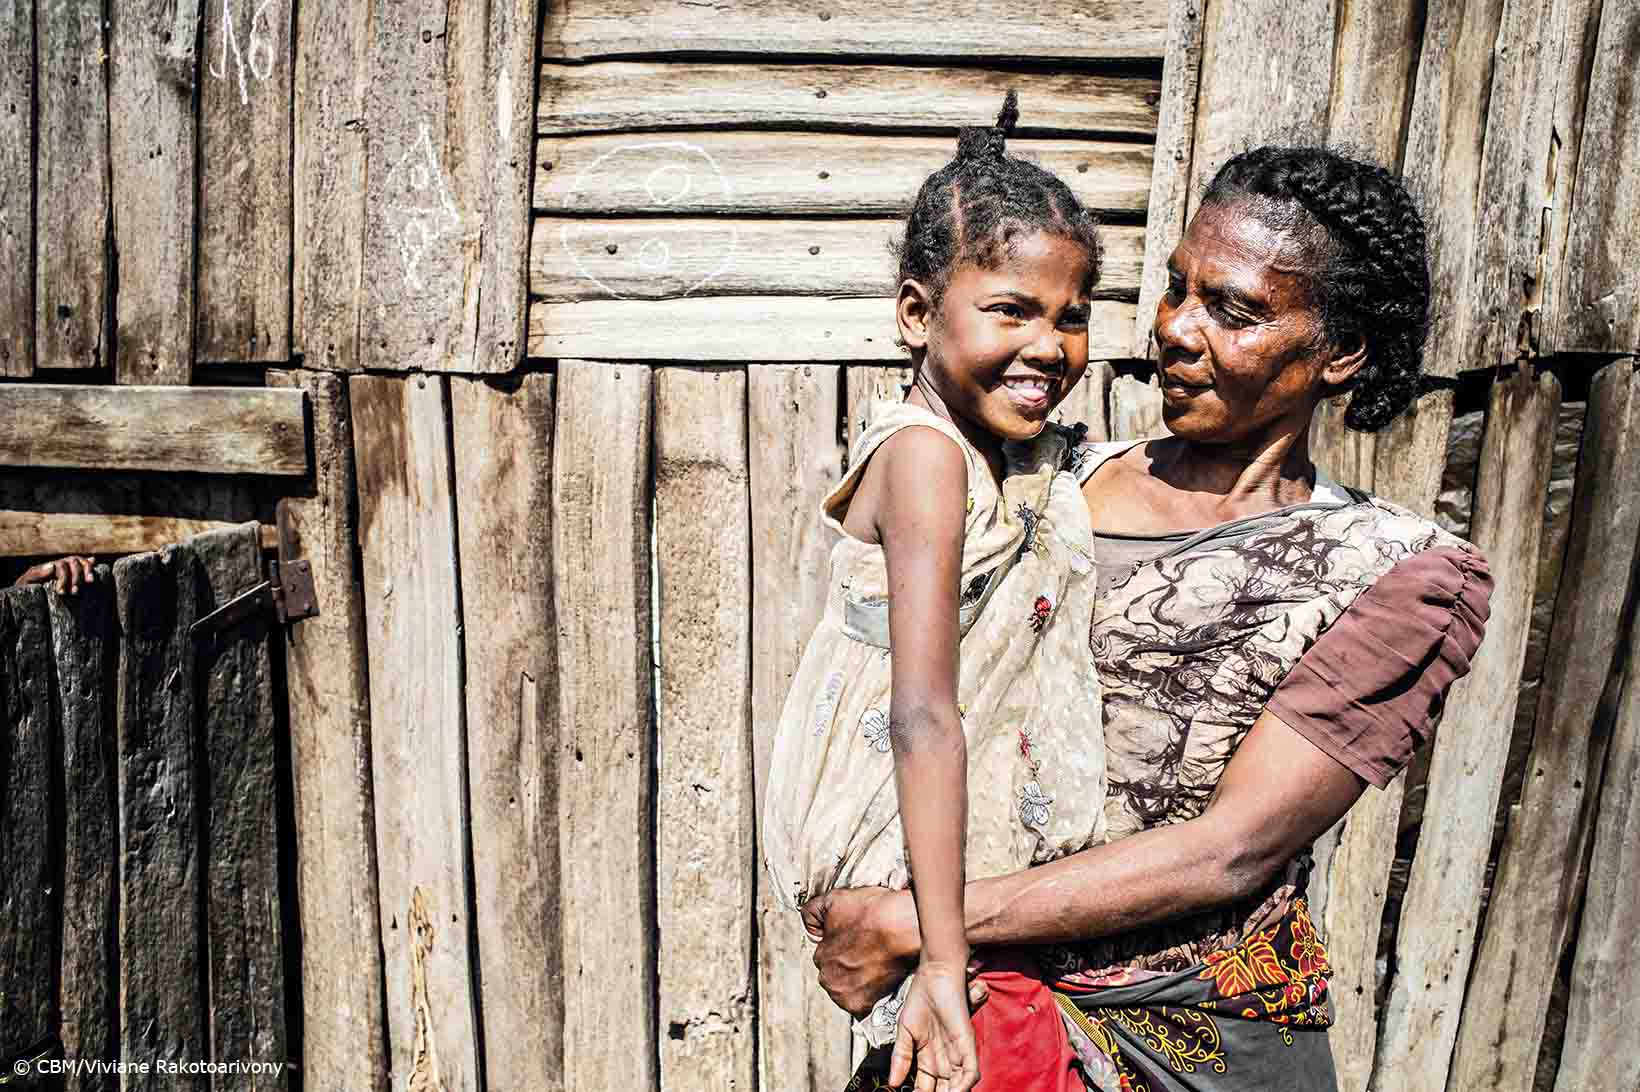 Une femme d'âge moyen aux cheveux soigneusement tressés regarde le visage amusé d'une petite fille dans ses bras. Elles se tiennent toutes deux devant une maisonnette en planches dans le sud de Madagascar.